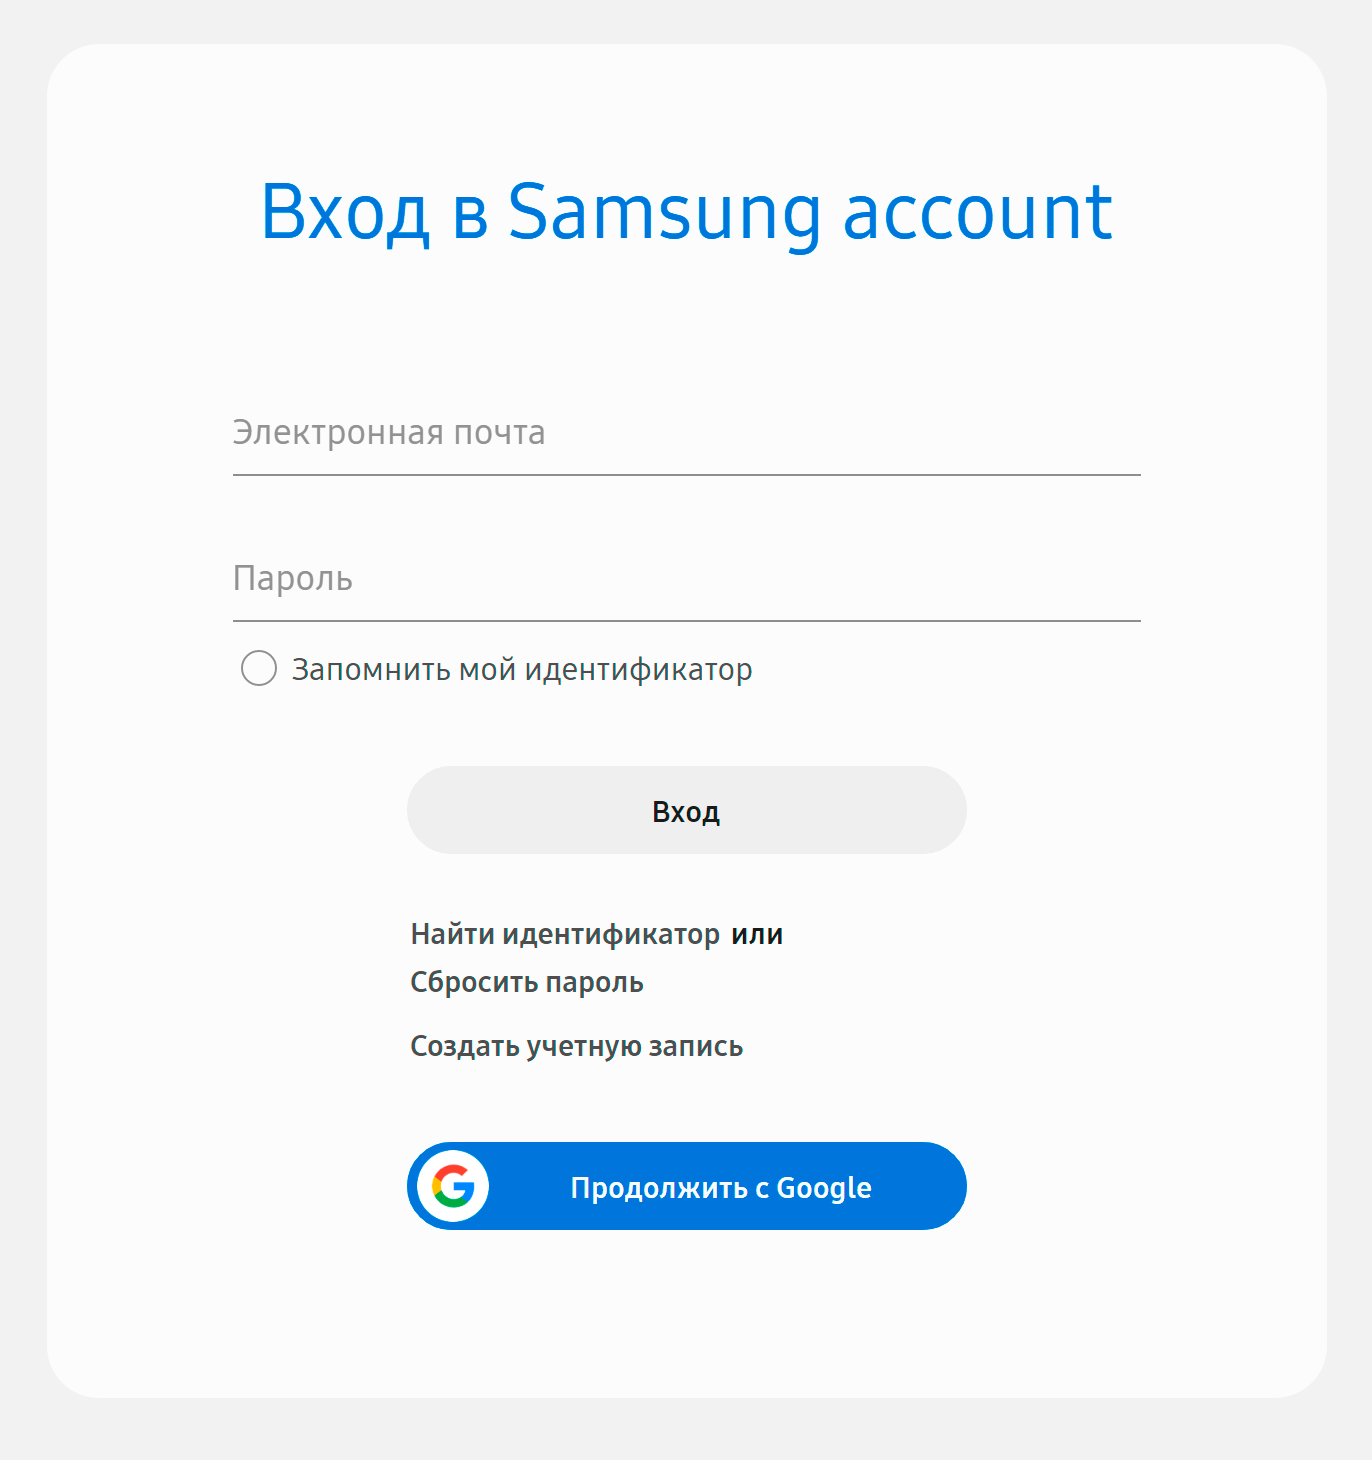 Войдите в аккаунт «Самсунг» с помощью логина и пароля или данных гугл⁠-⁠аккаунта